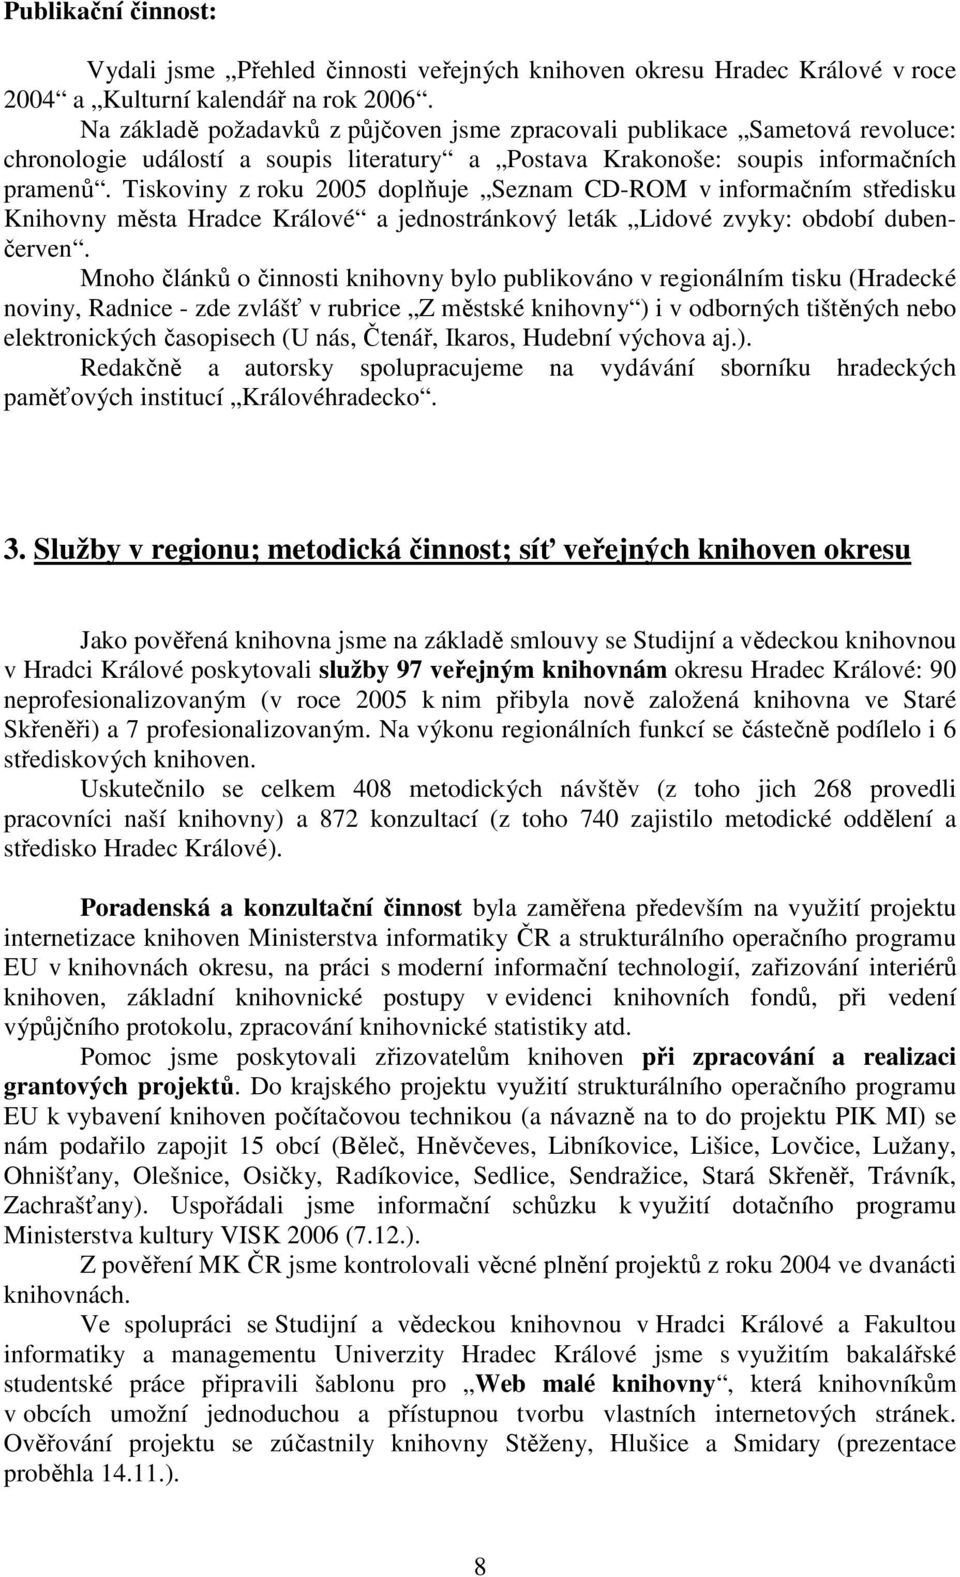 Tiskoviny z roku 2005 doplňuje Seznam CD-ROM v informačním středisku Knihovny města Hradce Králové a jednostránkový leták Lidové zvyky: období dubenčerven.